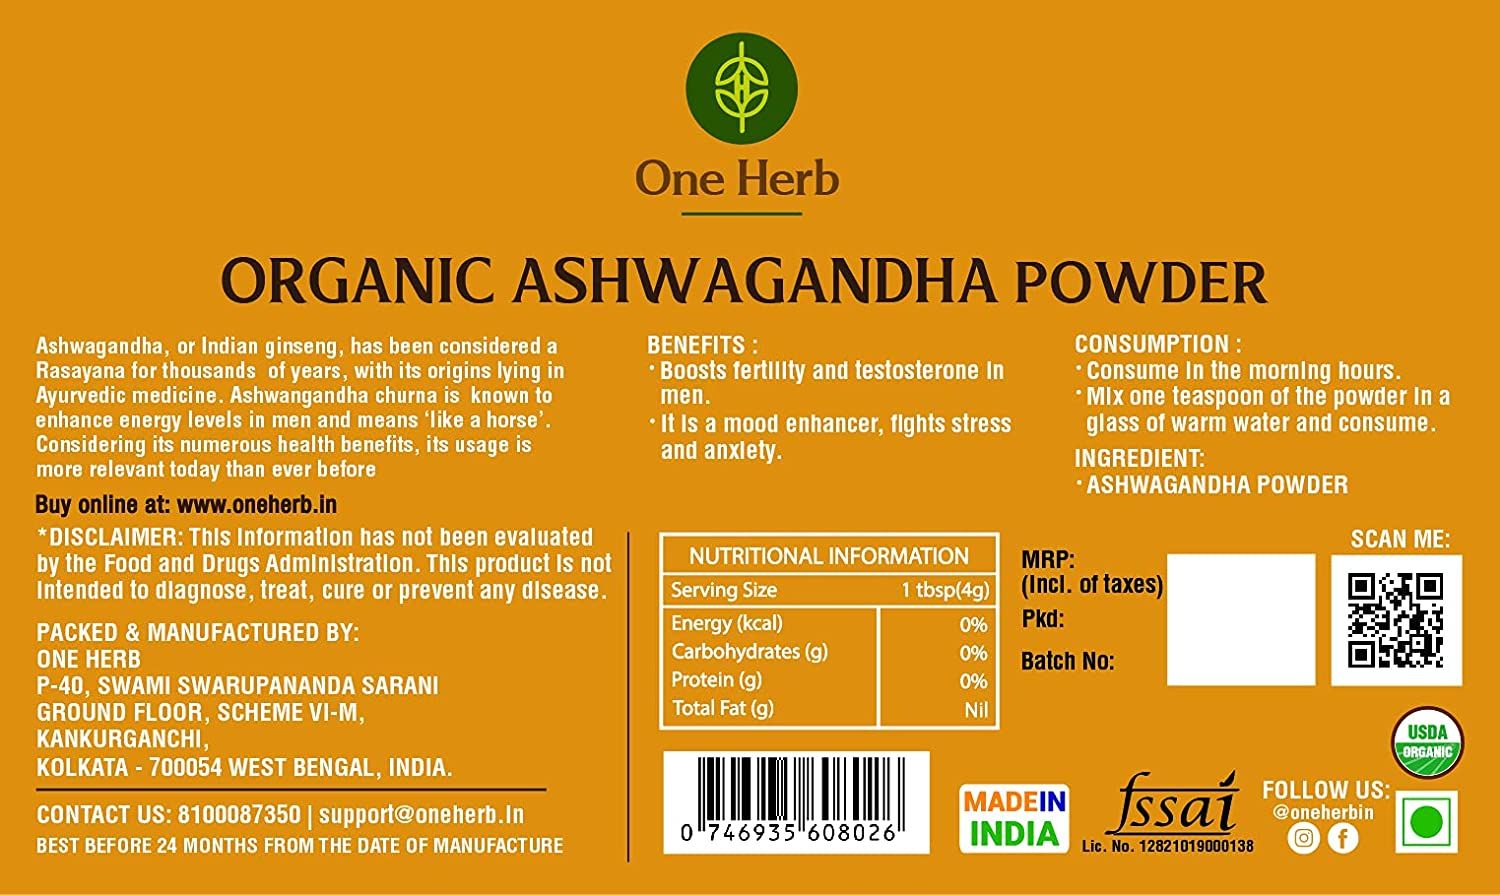 One Herb Organic Ashwagandha Powder Image